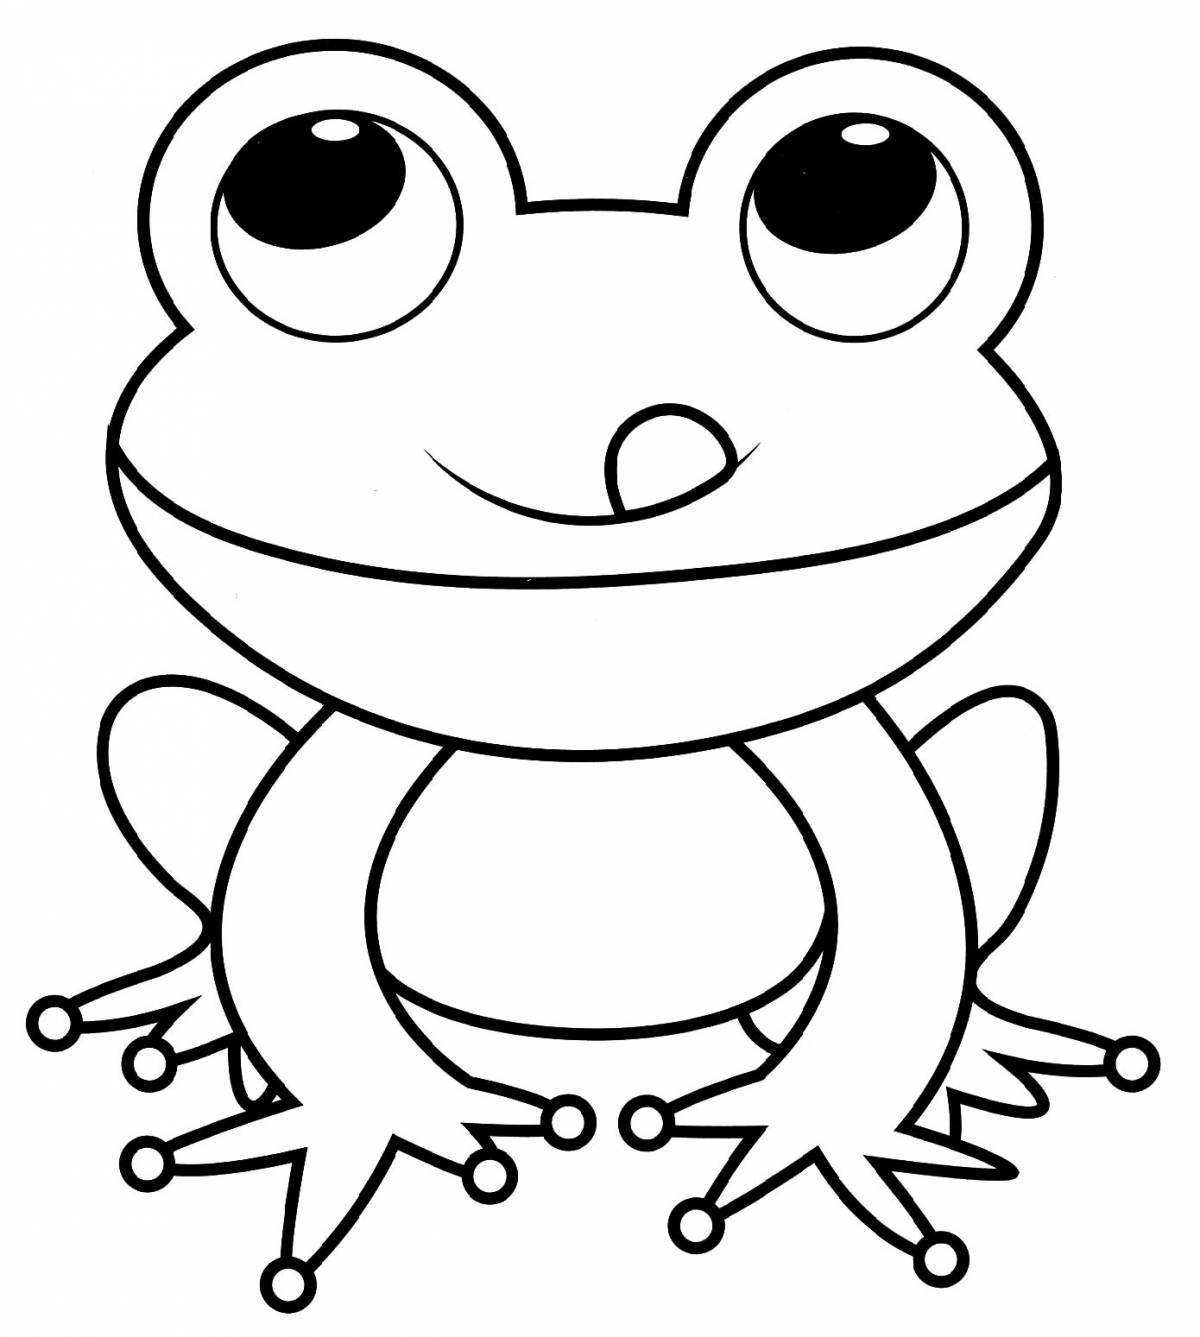 Раскраска «игривая лягушка» для детей 4-5 лет